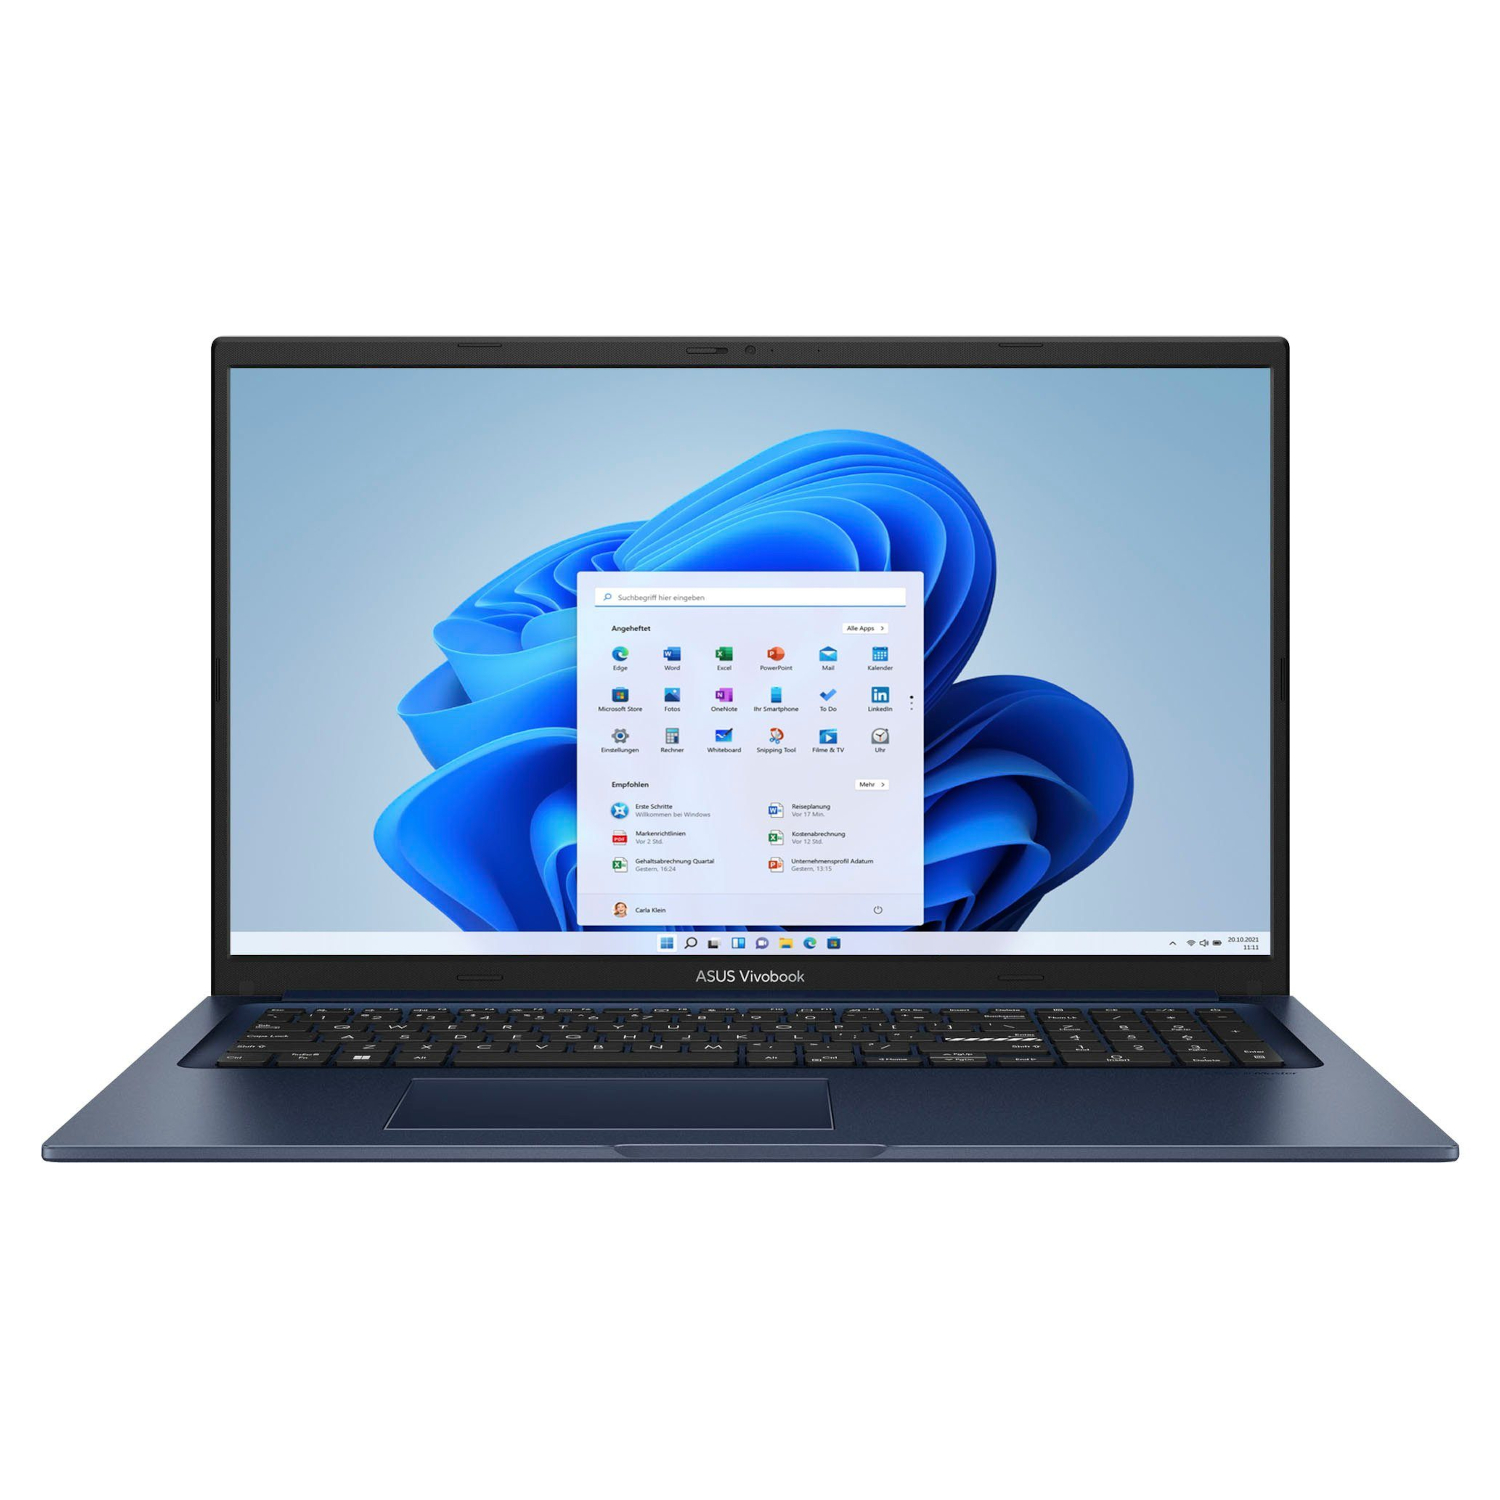 ASUS Vivobook Notebook Display, Blue Quiet eingerichtet, mit 24 SSD, GB 4000 Zoll X-Serie, 17,3 fertig Intel®, RAM, GB